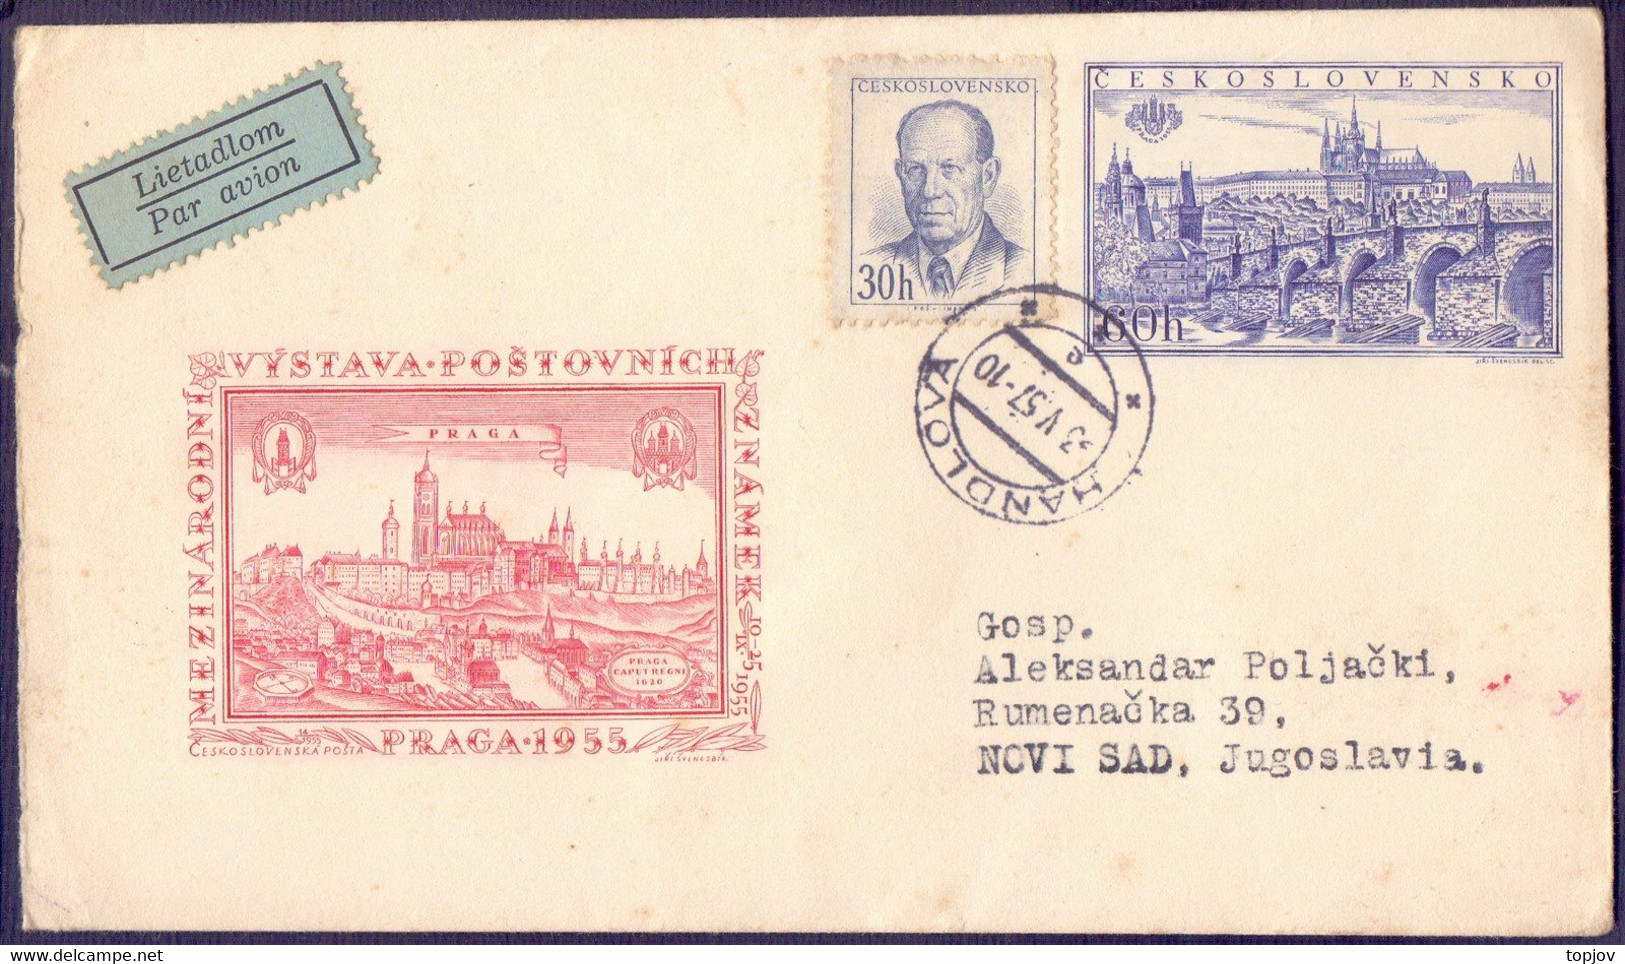 CZECHOSLOVAKIA - PRAGA - BRIDGE - 1957 - Enveloppes